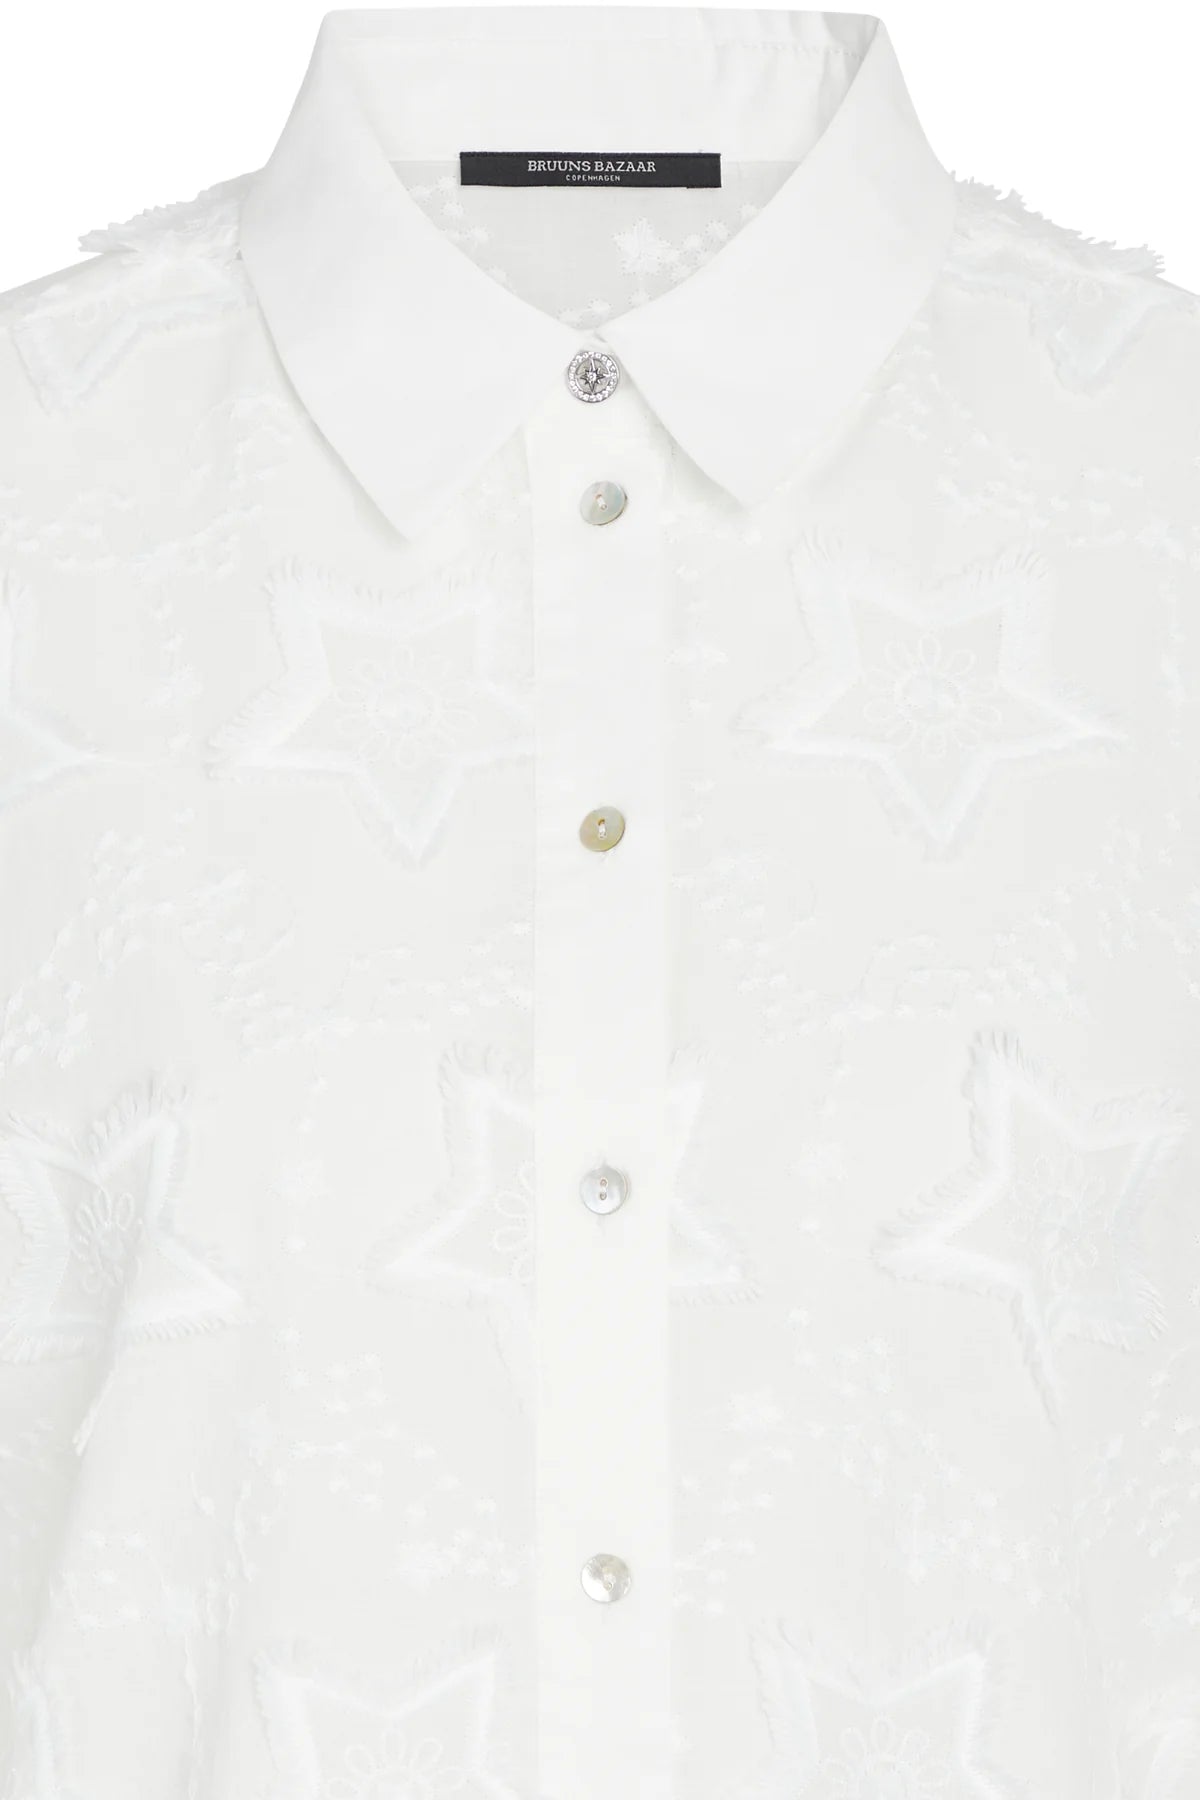 CoconutBBFelina shirt - White